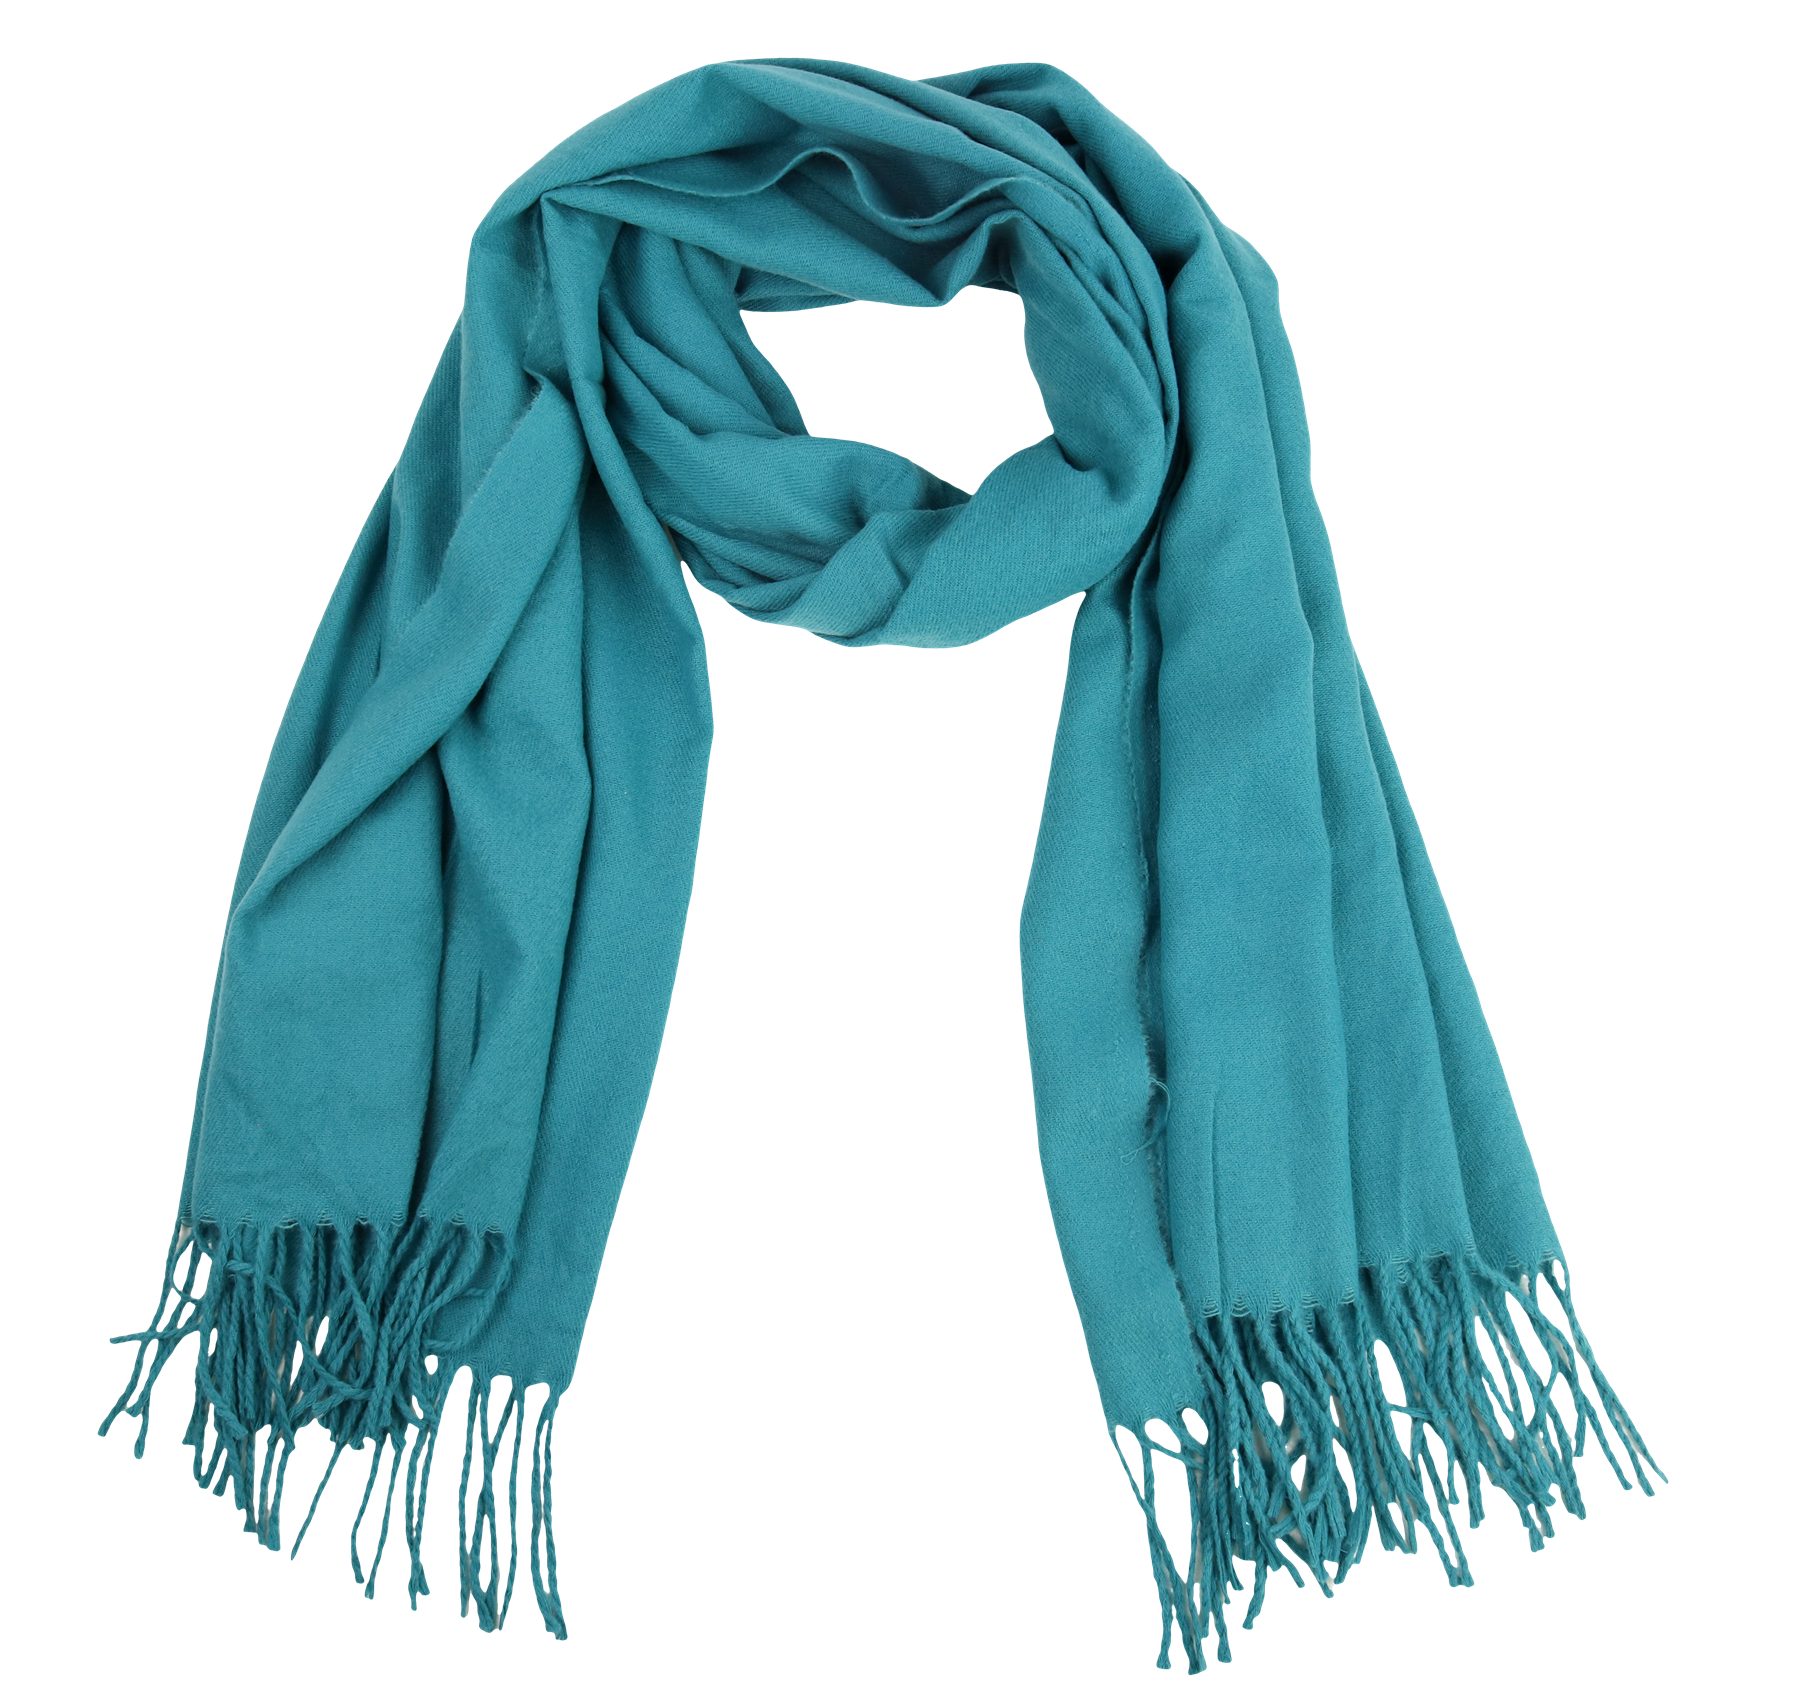 MIRROSI Modeschal weicher und warmer Unifarbe Schal mit Fransen, 70x180cm, (Viele tolle Farben zur Auswahl), Damen Halstuch ideal für Herbst und Winter Grünblau